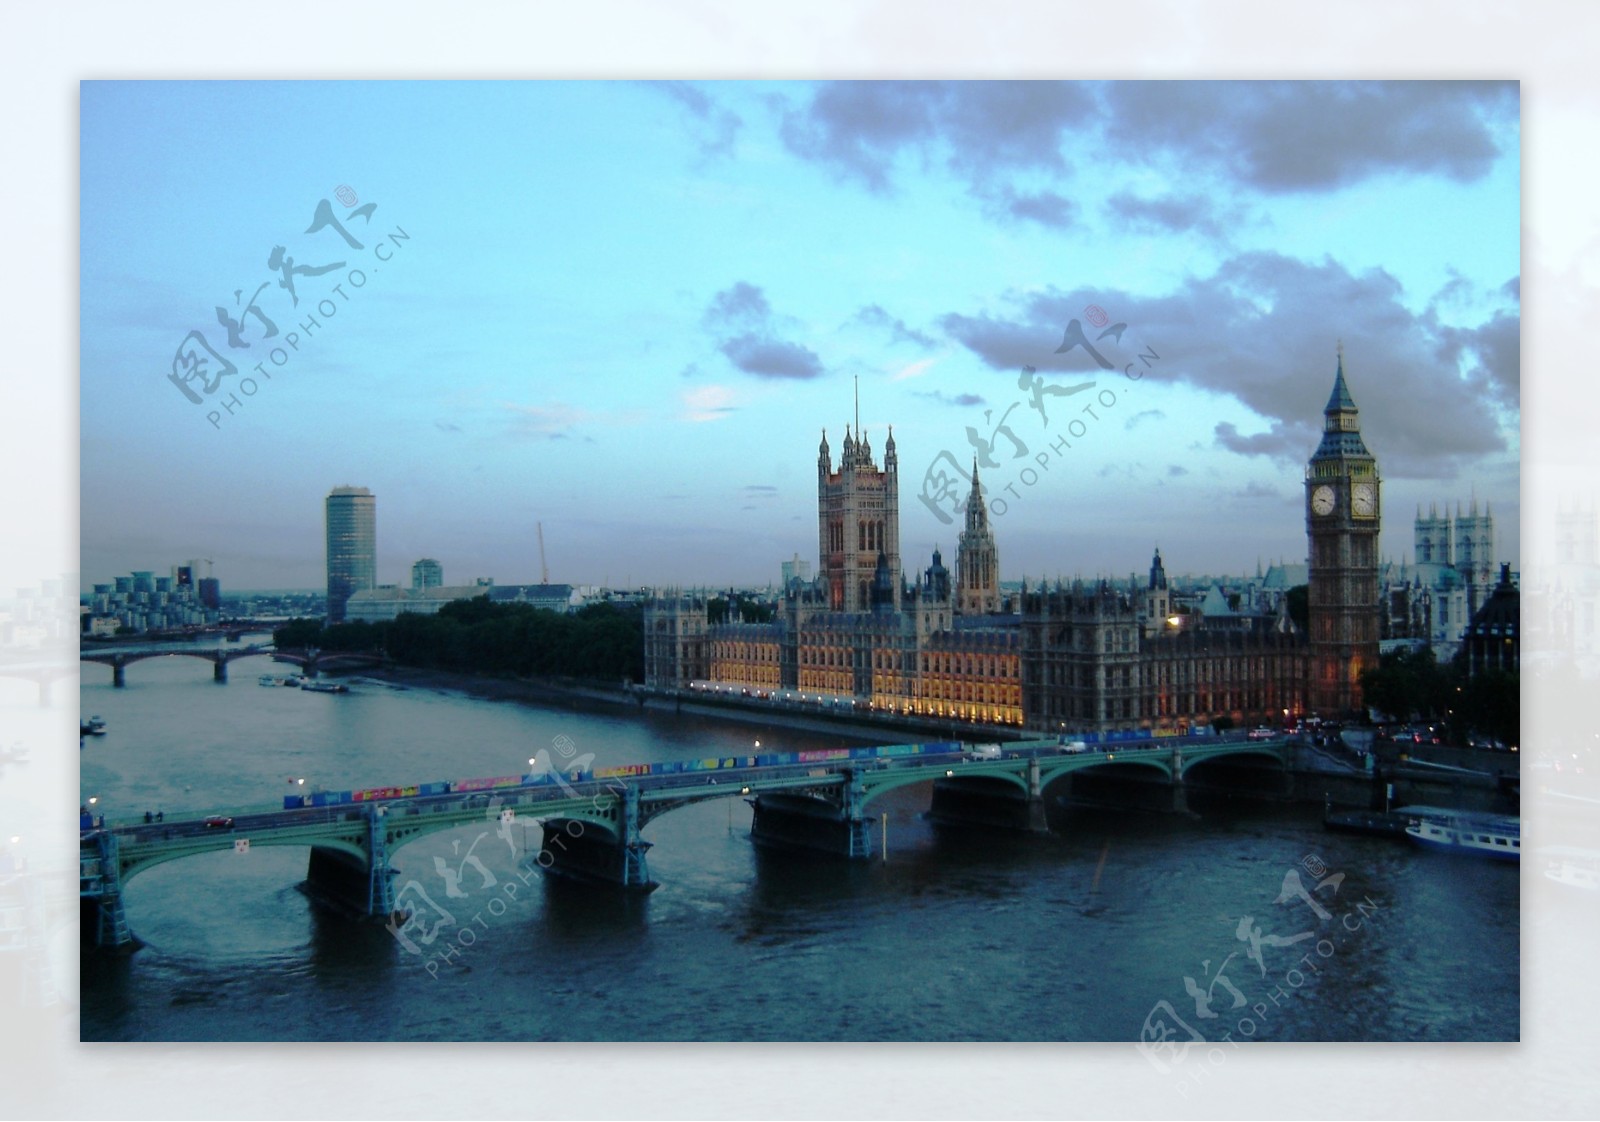 伦敦风光图片